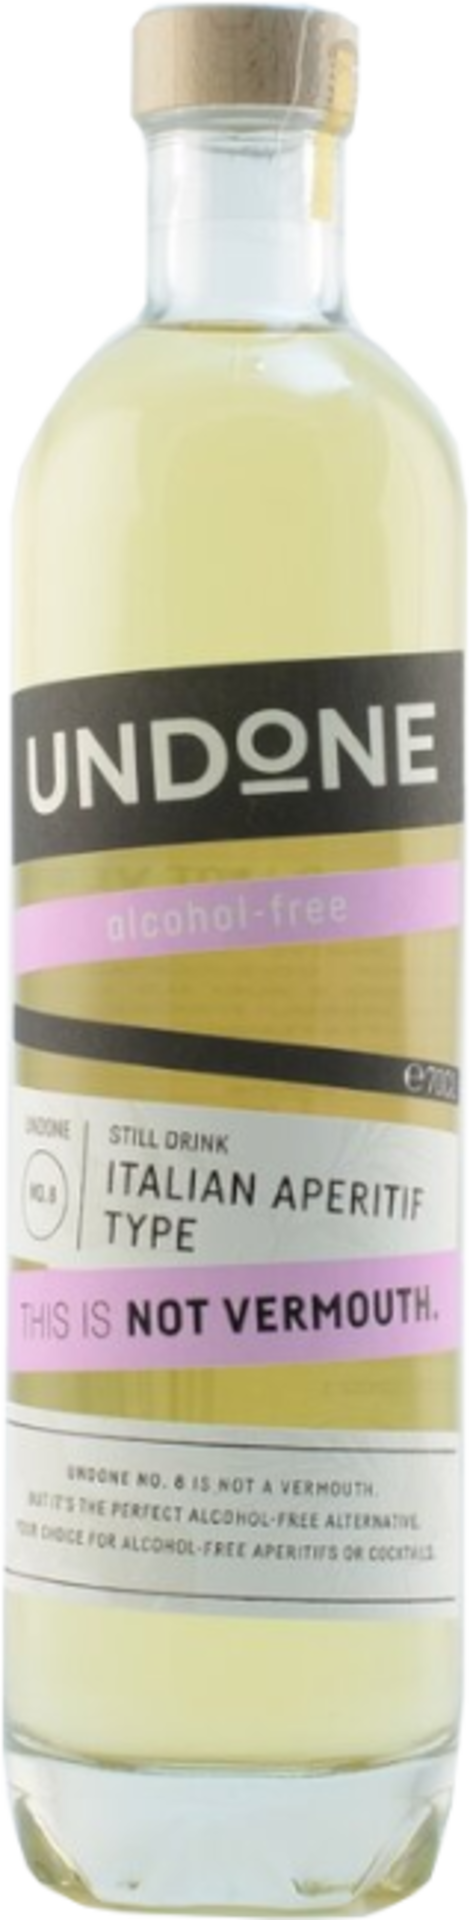 Undone No.7 Italian Aperitif (alkoholfrei) Destilate Alkoholfrei Spirits & | Alkoholfreie 0% Wine | Hofer 